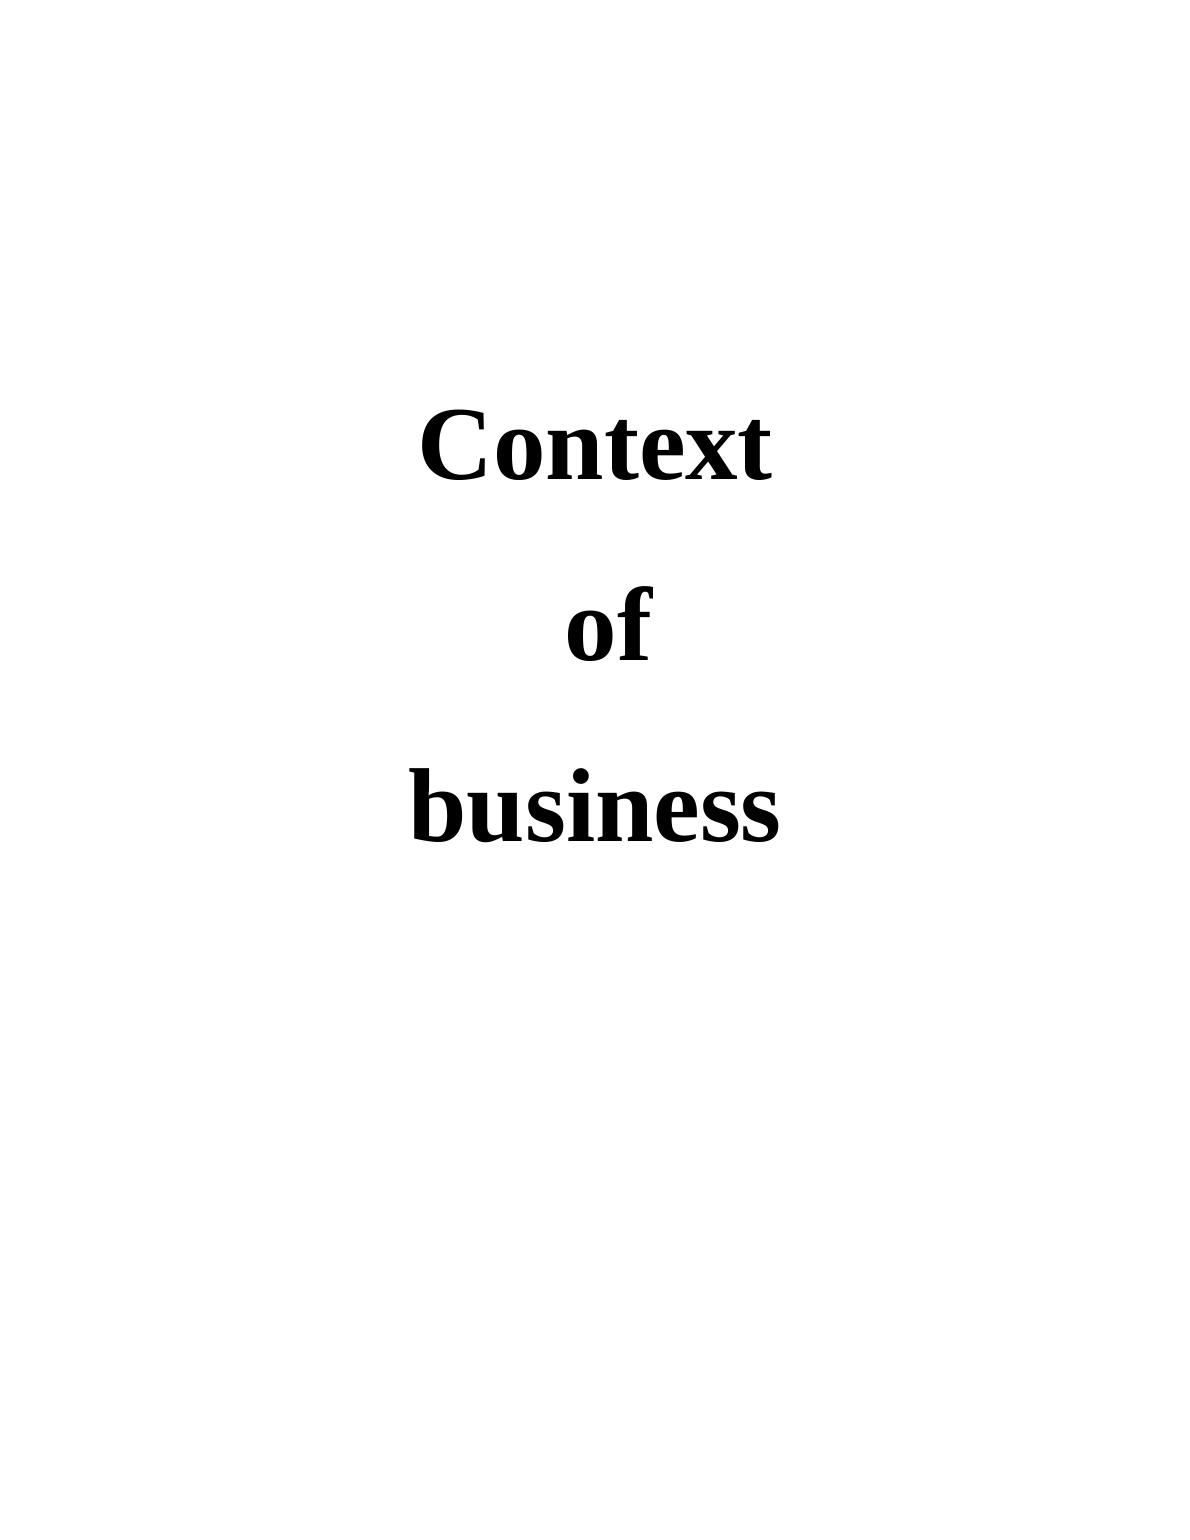 Macro Environmental Factors of Business_1